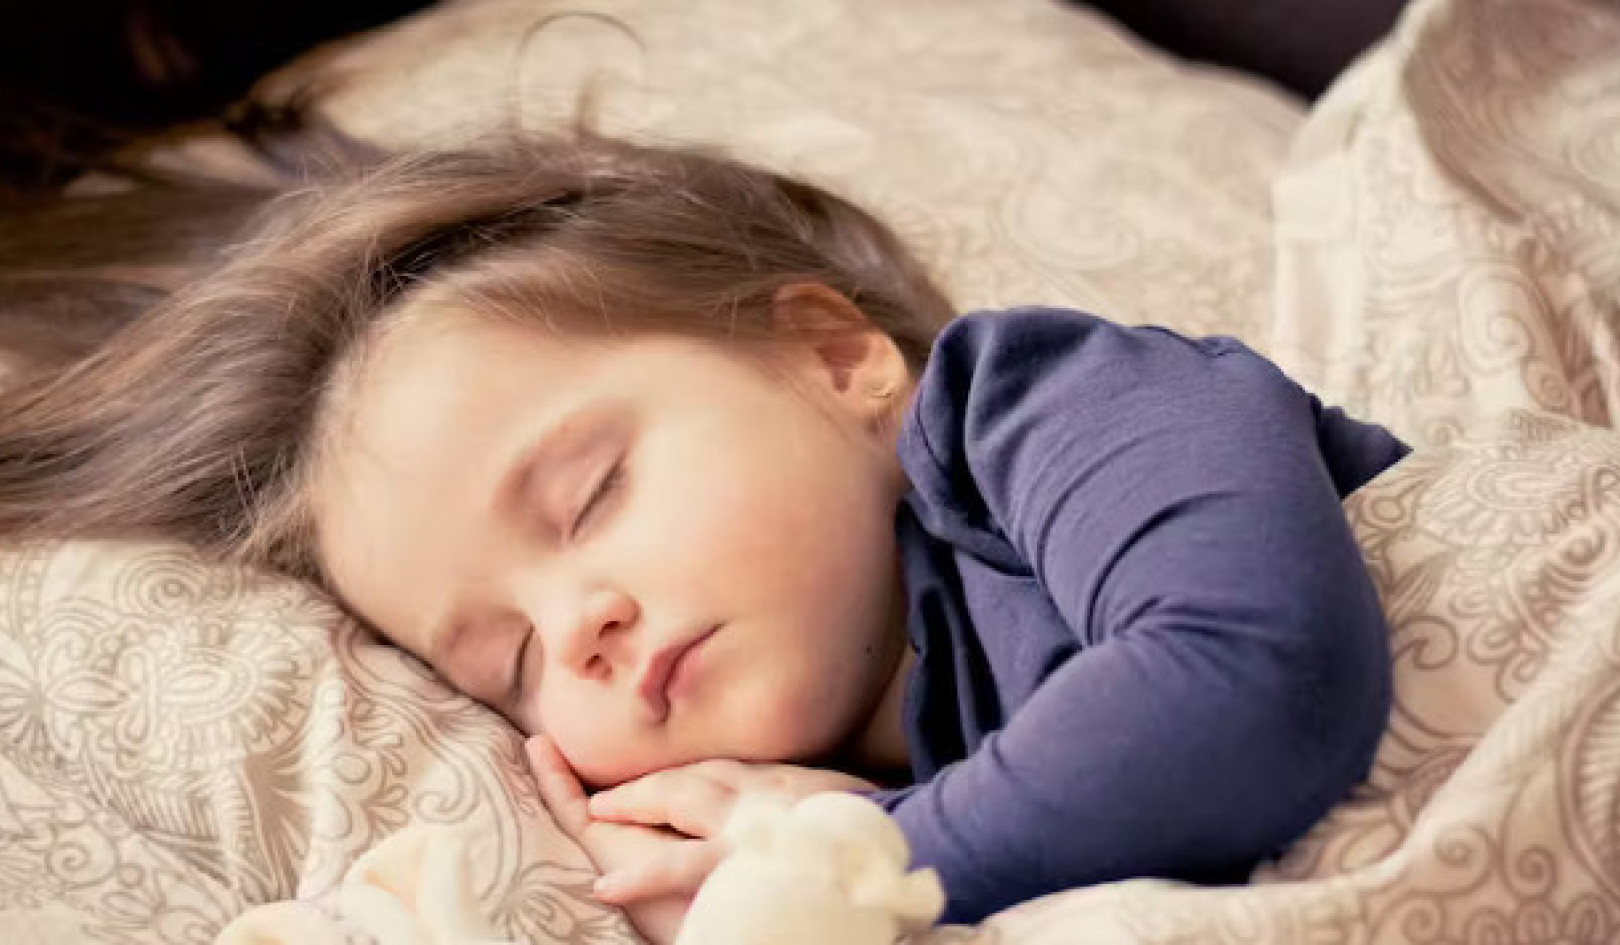 بسیاری از والدین از آدامس ملاتونین برای کمک به خواب کودکان استفاده می کنند